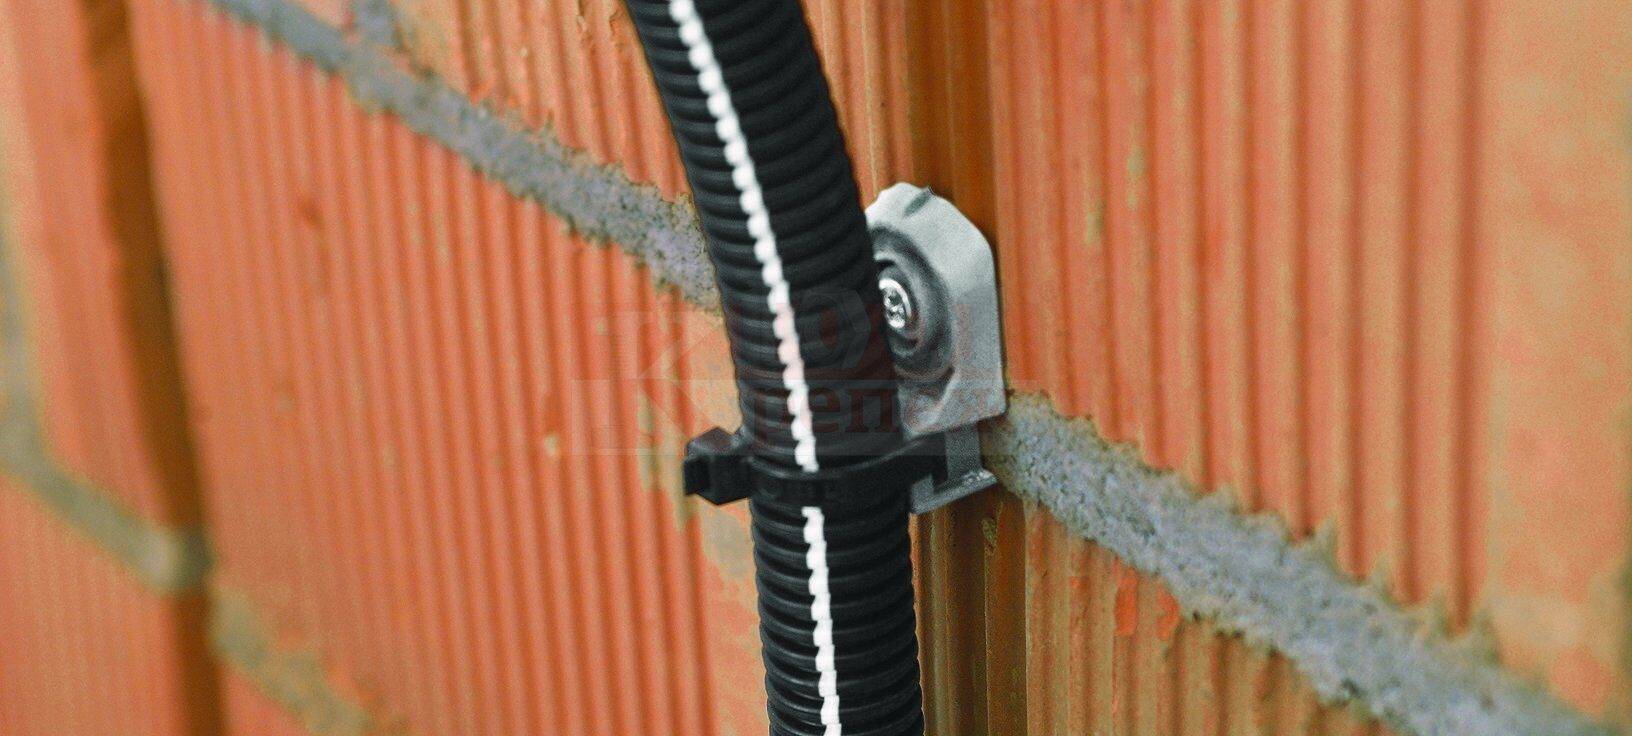 Способы крепления проводов и кабелей: к стене, потолку, столбу, трубе, тросу